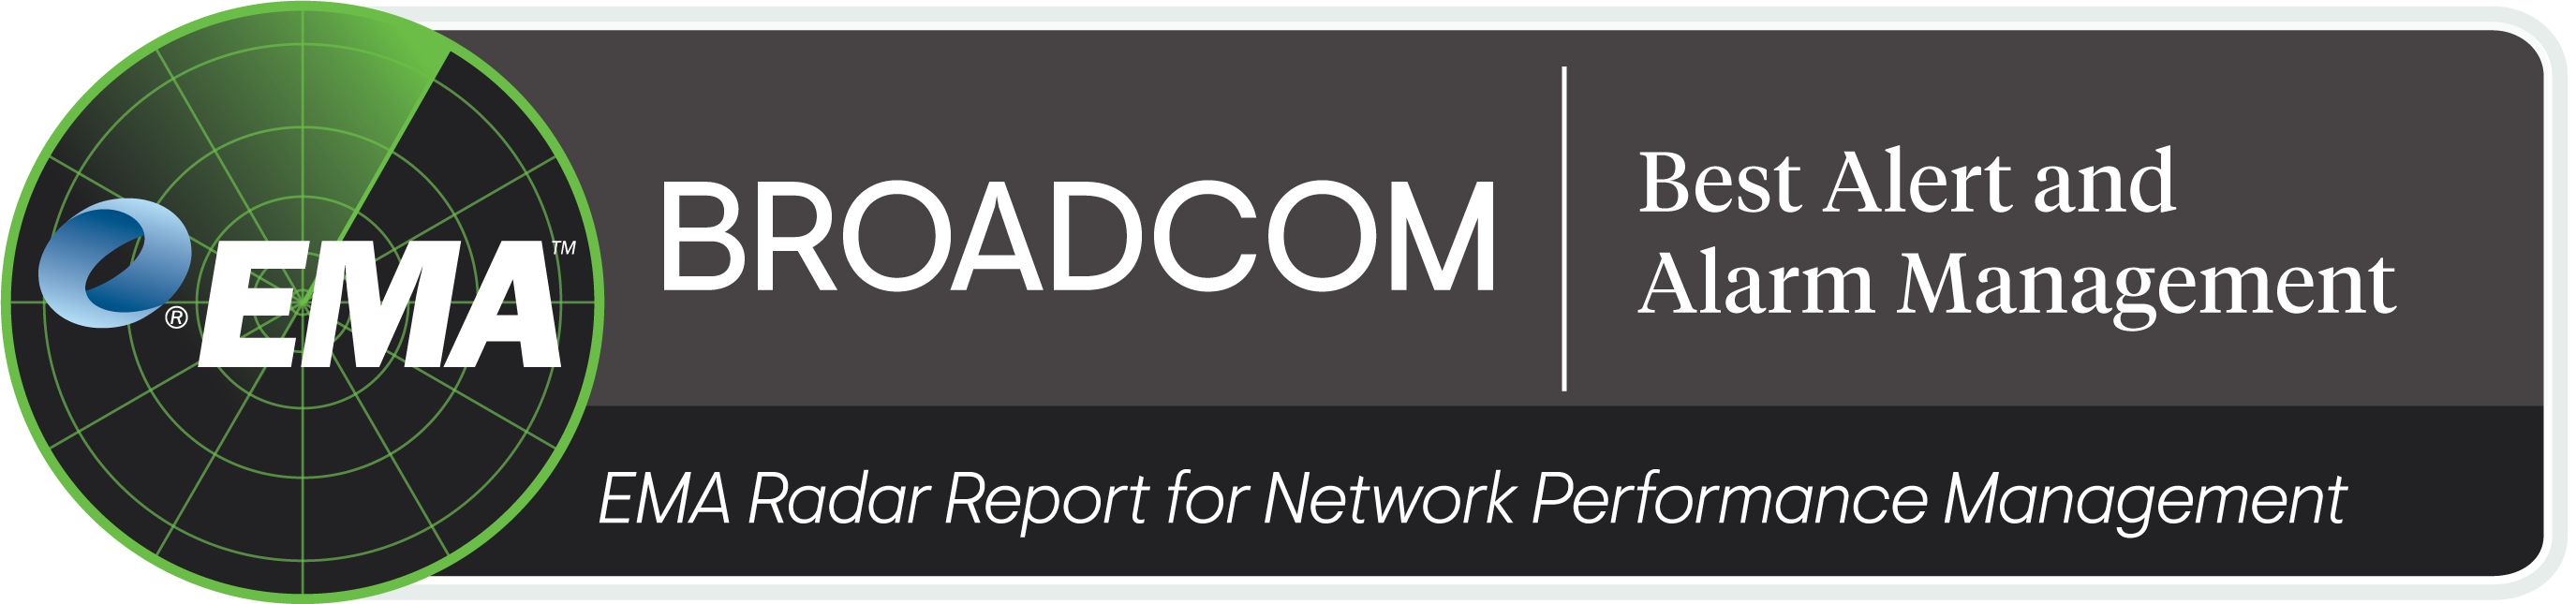 ESD_FY2021_Academy-Blog-Broadcom-Awarded-Highest-Vendor-Score-EMA-Radar-Report.figure_03